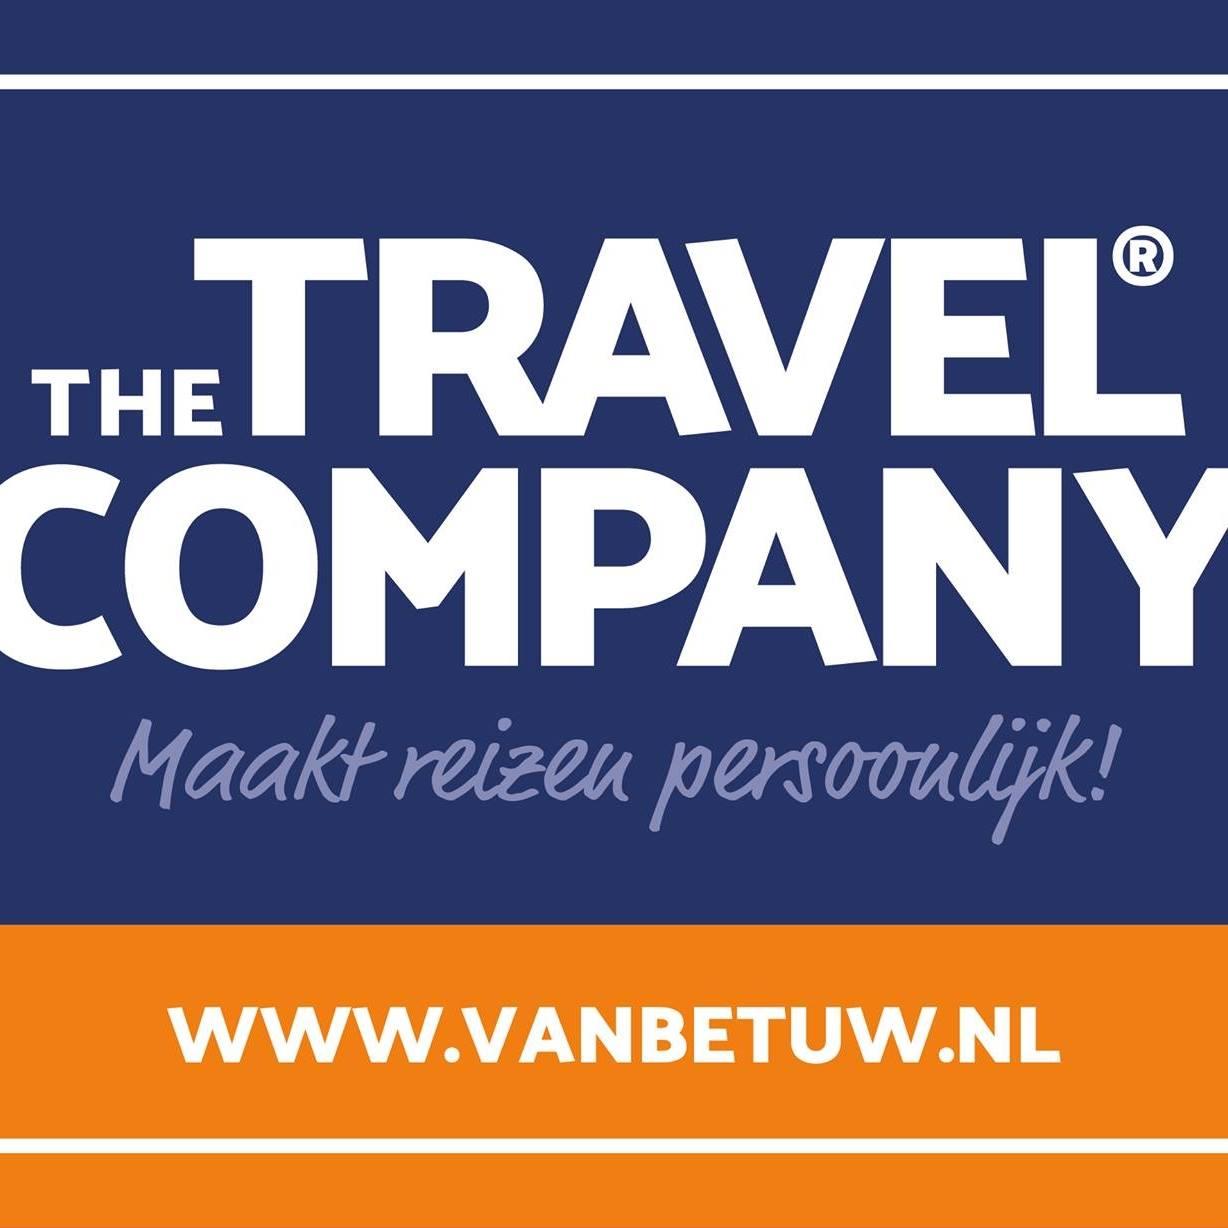 the travel company van betuw